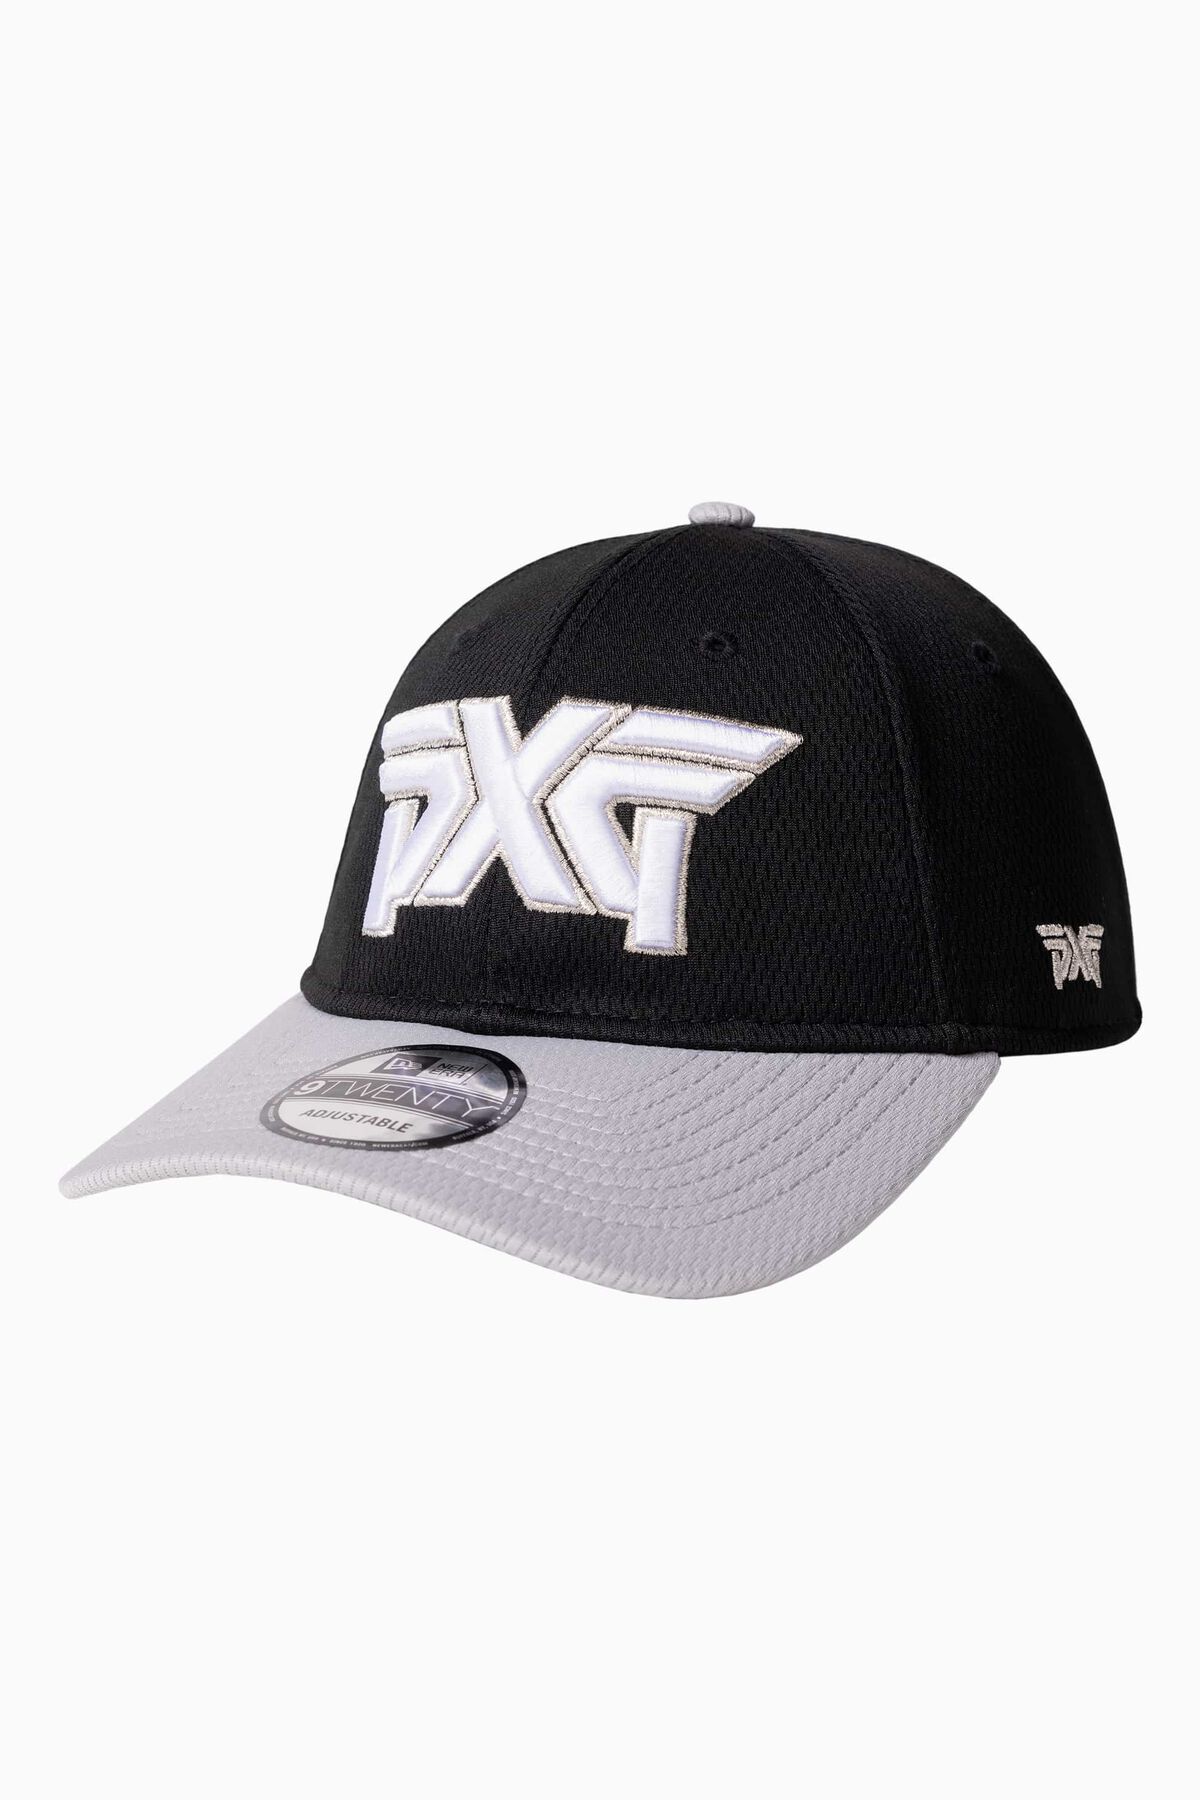 Buy PXG San Antonio Black 9TWENTY Adjustable Cap | PXG